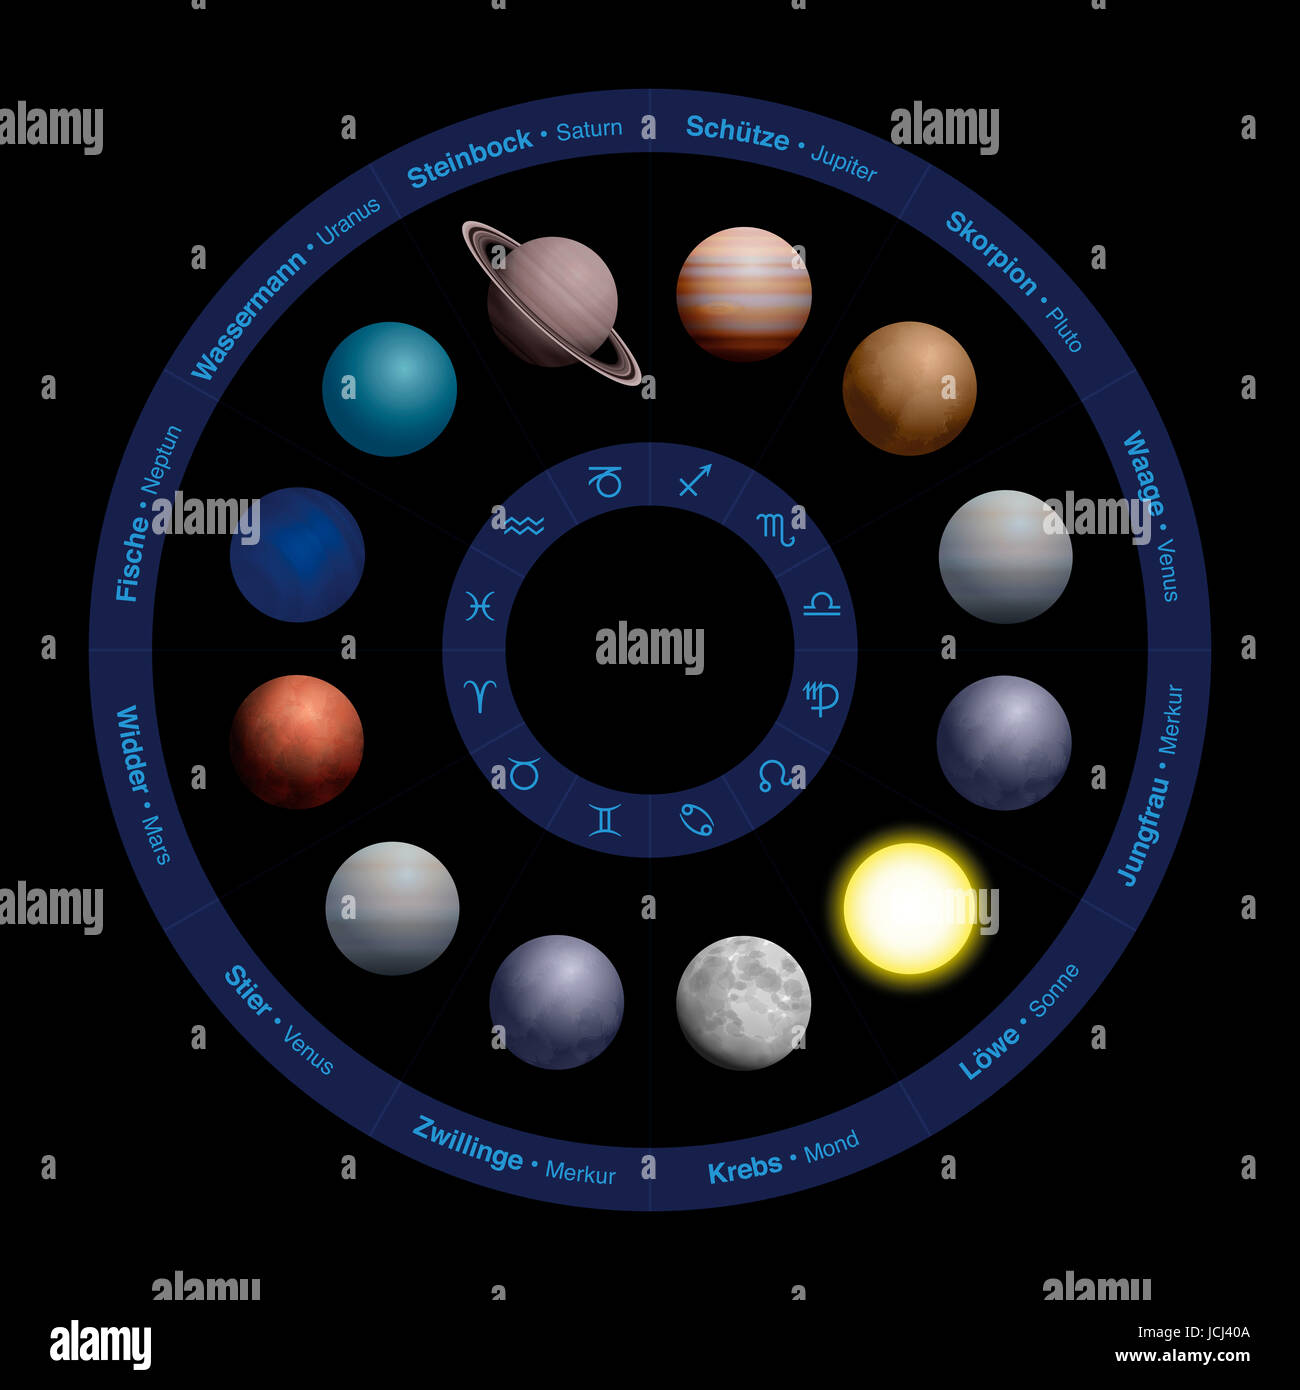 Planètes de l'astrologie, design réaliste, dans le cercle du zodiaque - avec des noms de langue allemande dans le cercle extérieur et des symboles dans le cercle intérieur. Banque D'Images